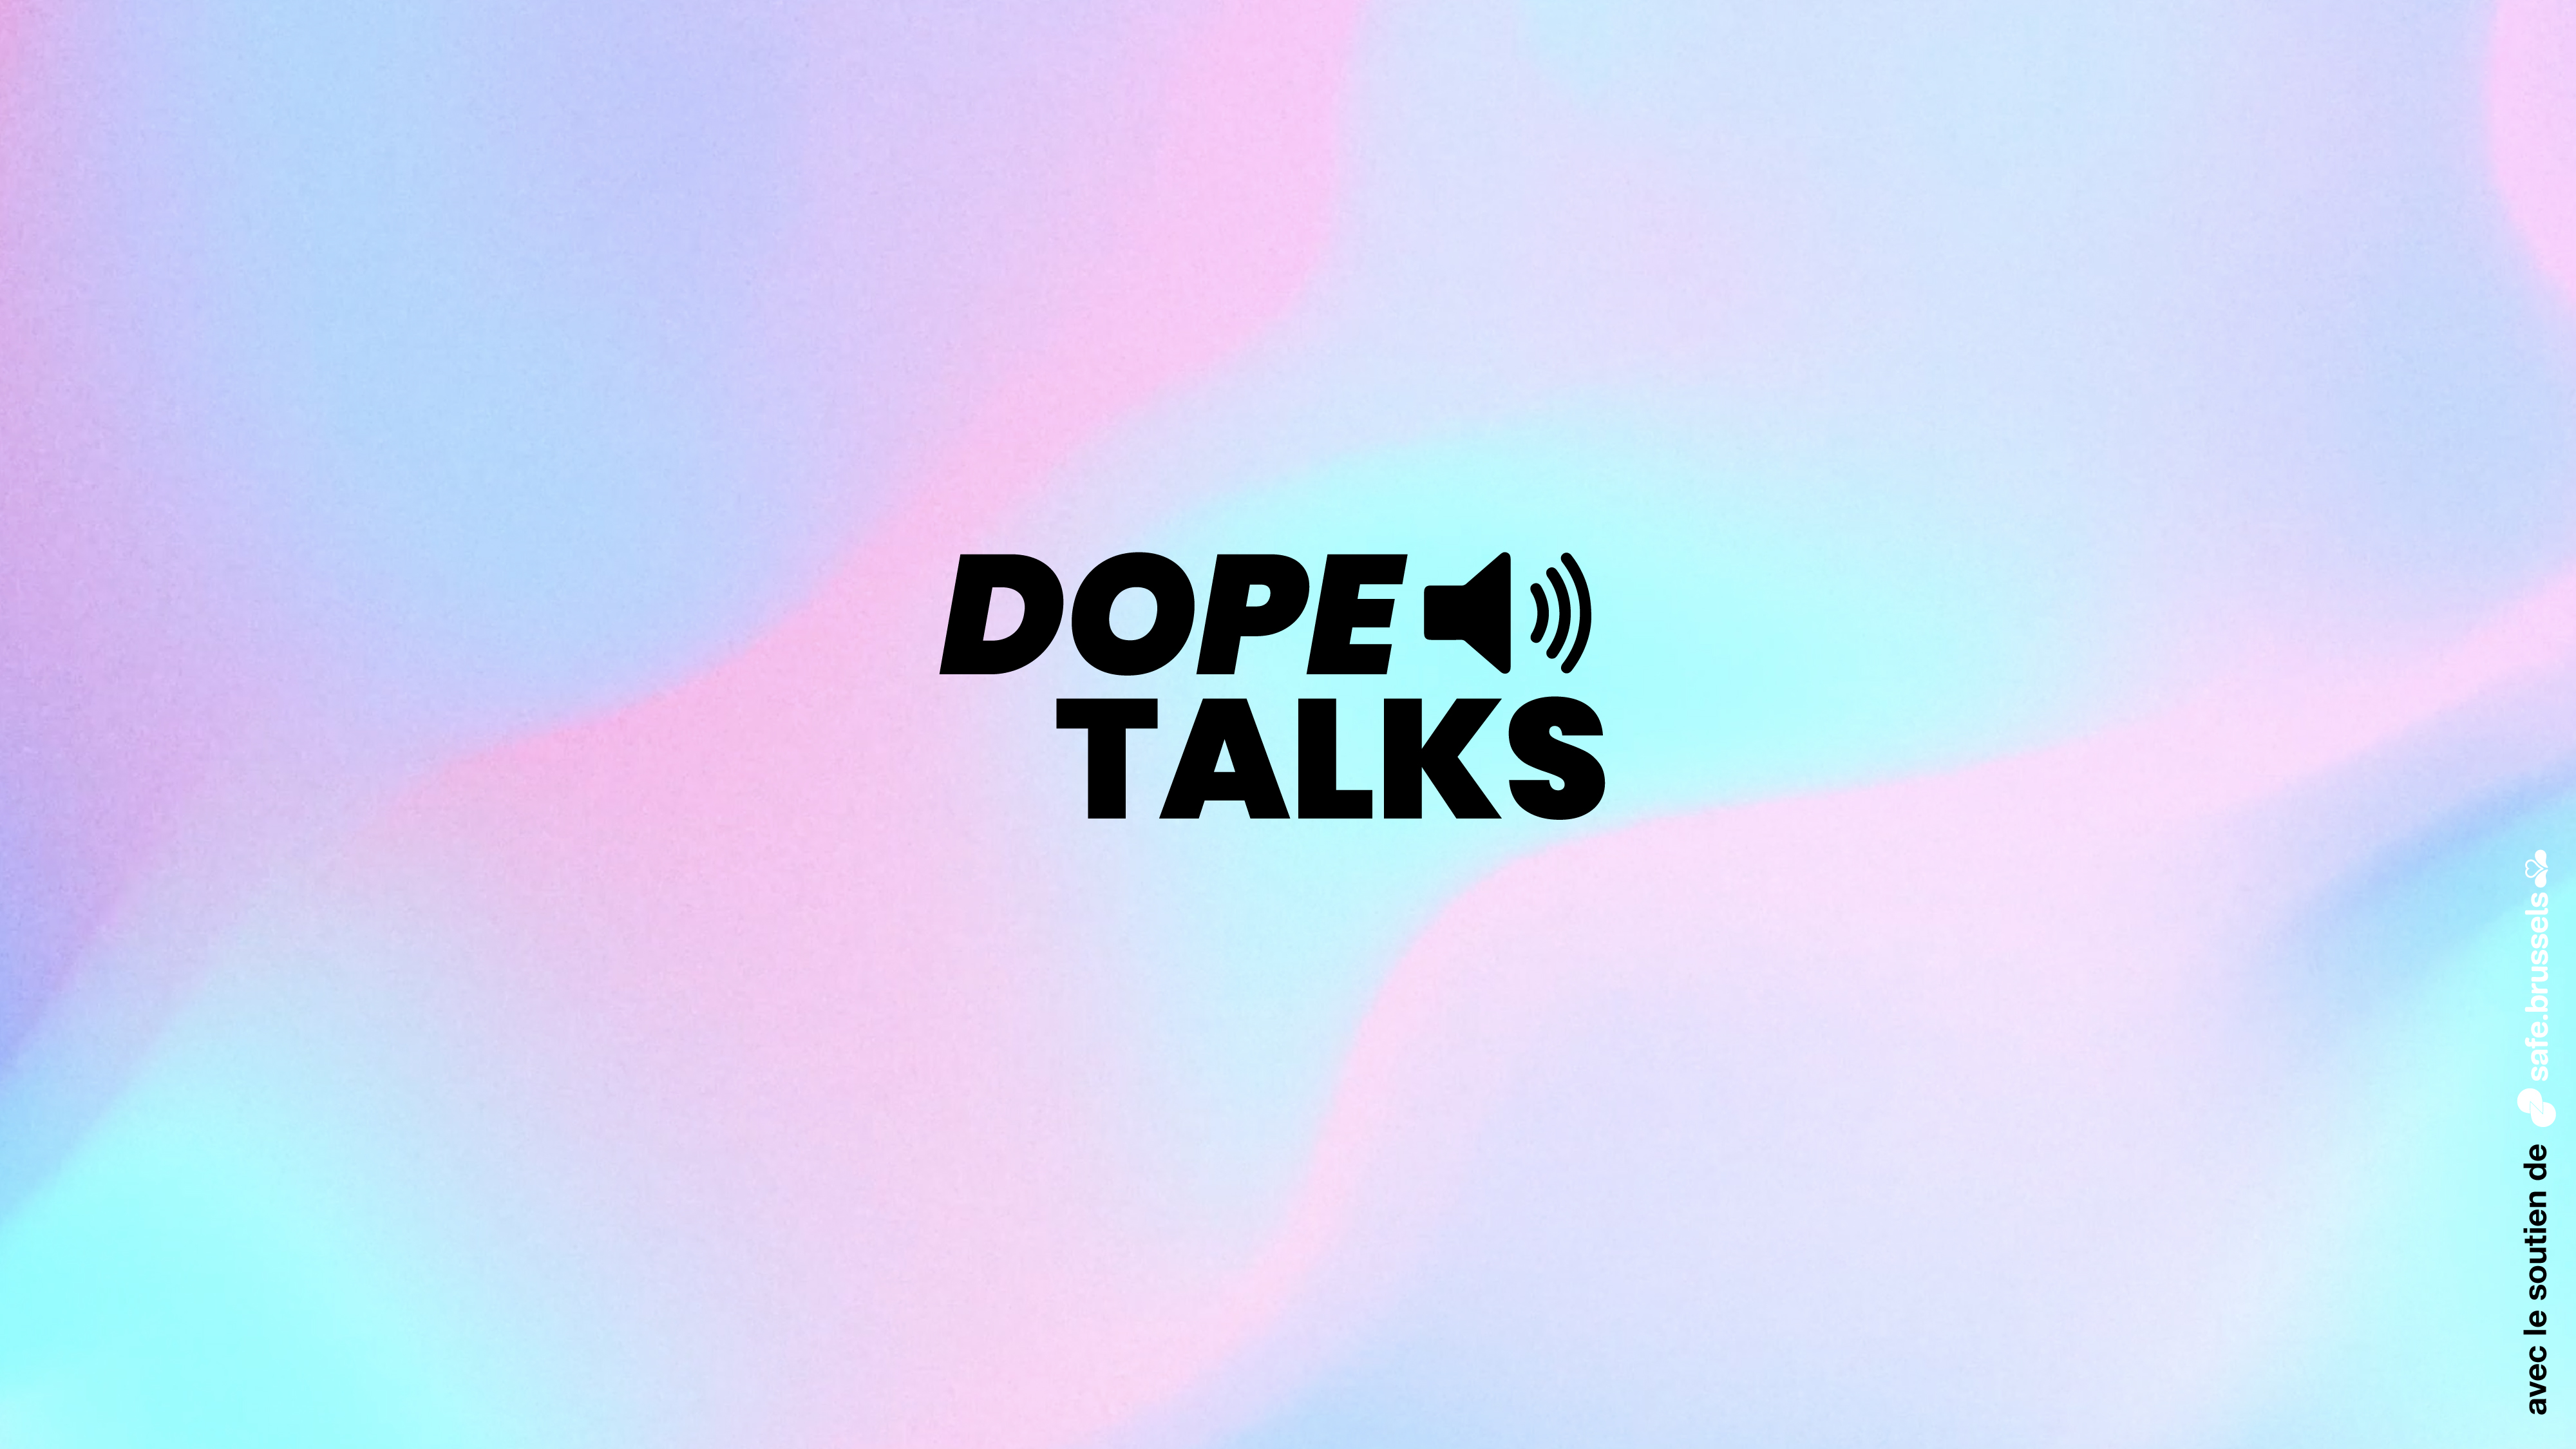 Dope Talks - Une campagne réussie avec 1.635.662 impressions